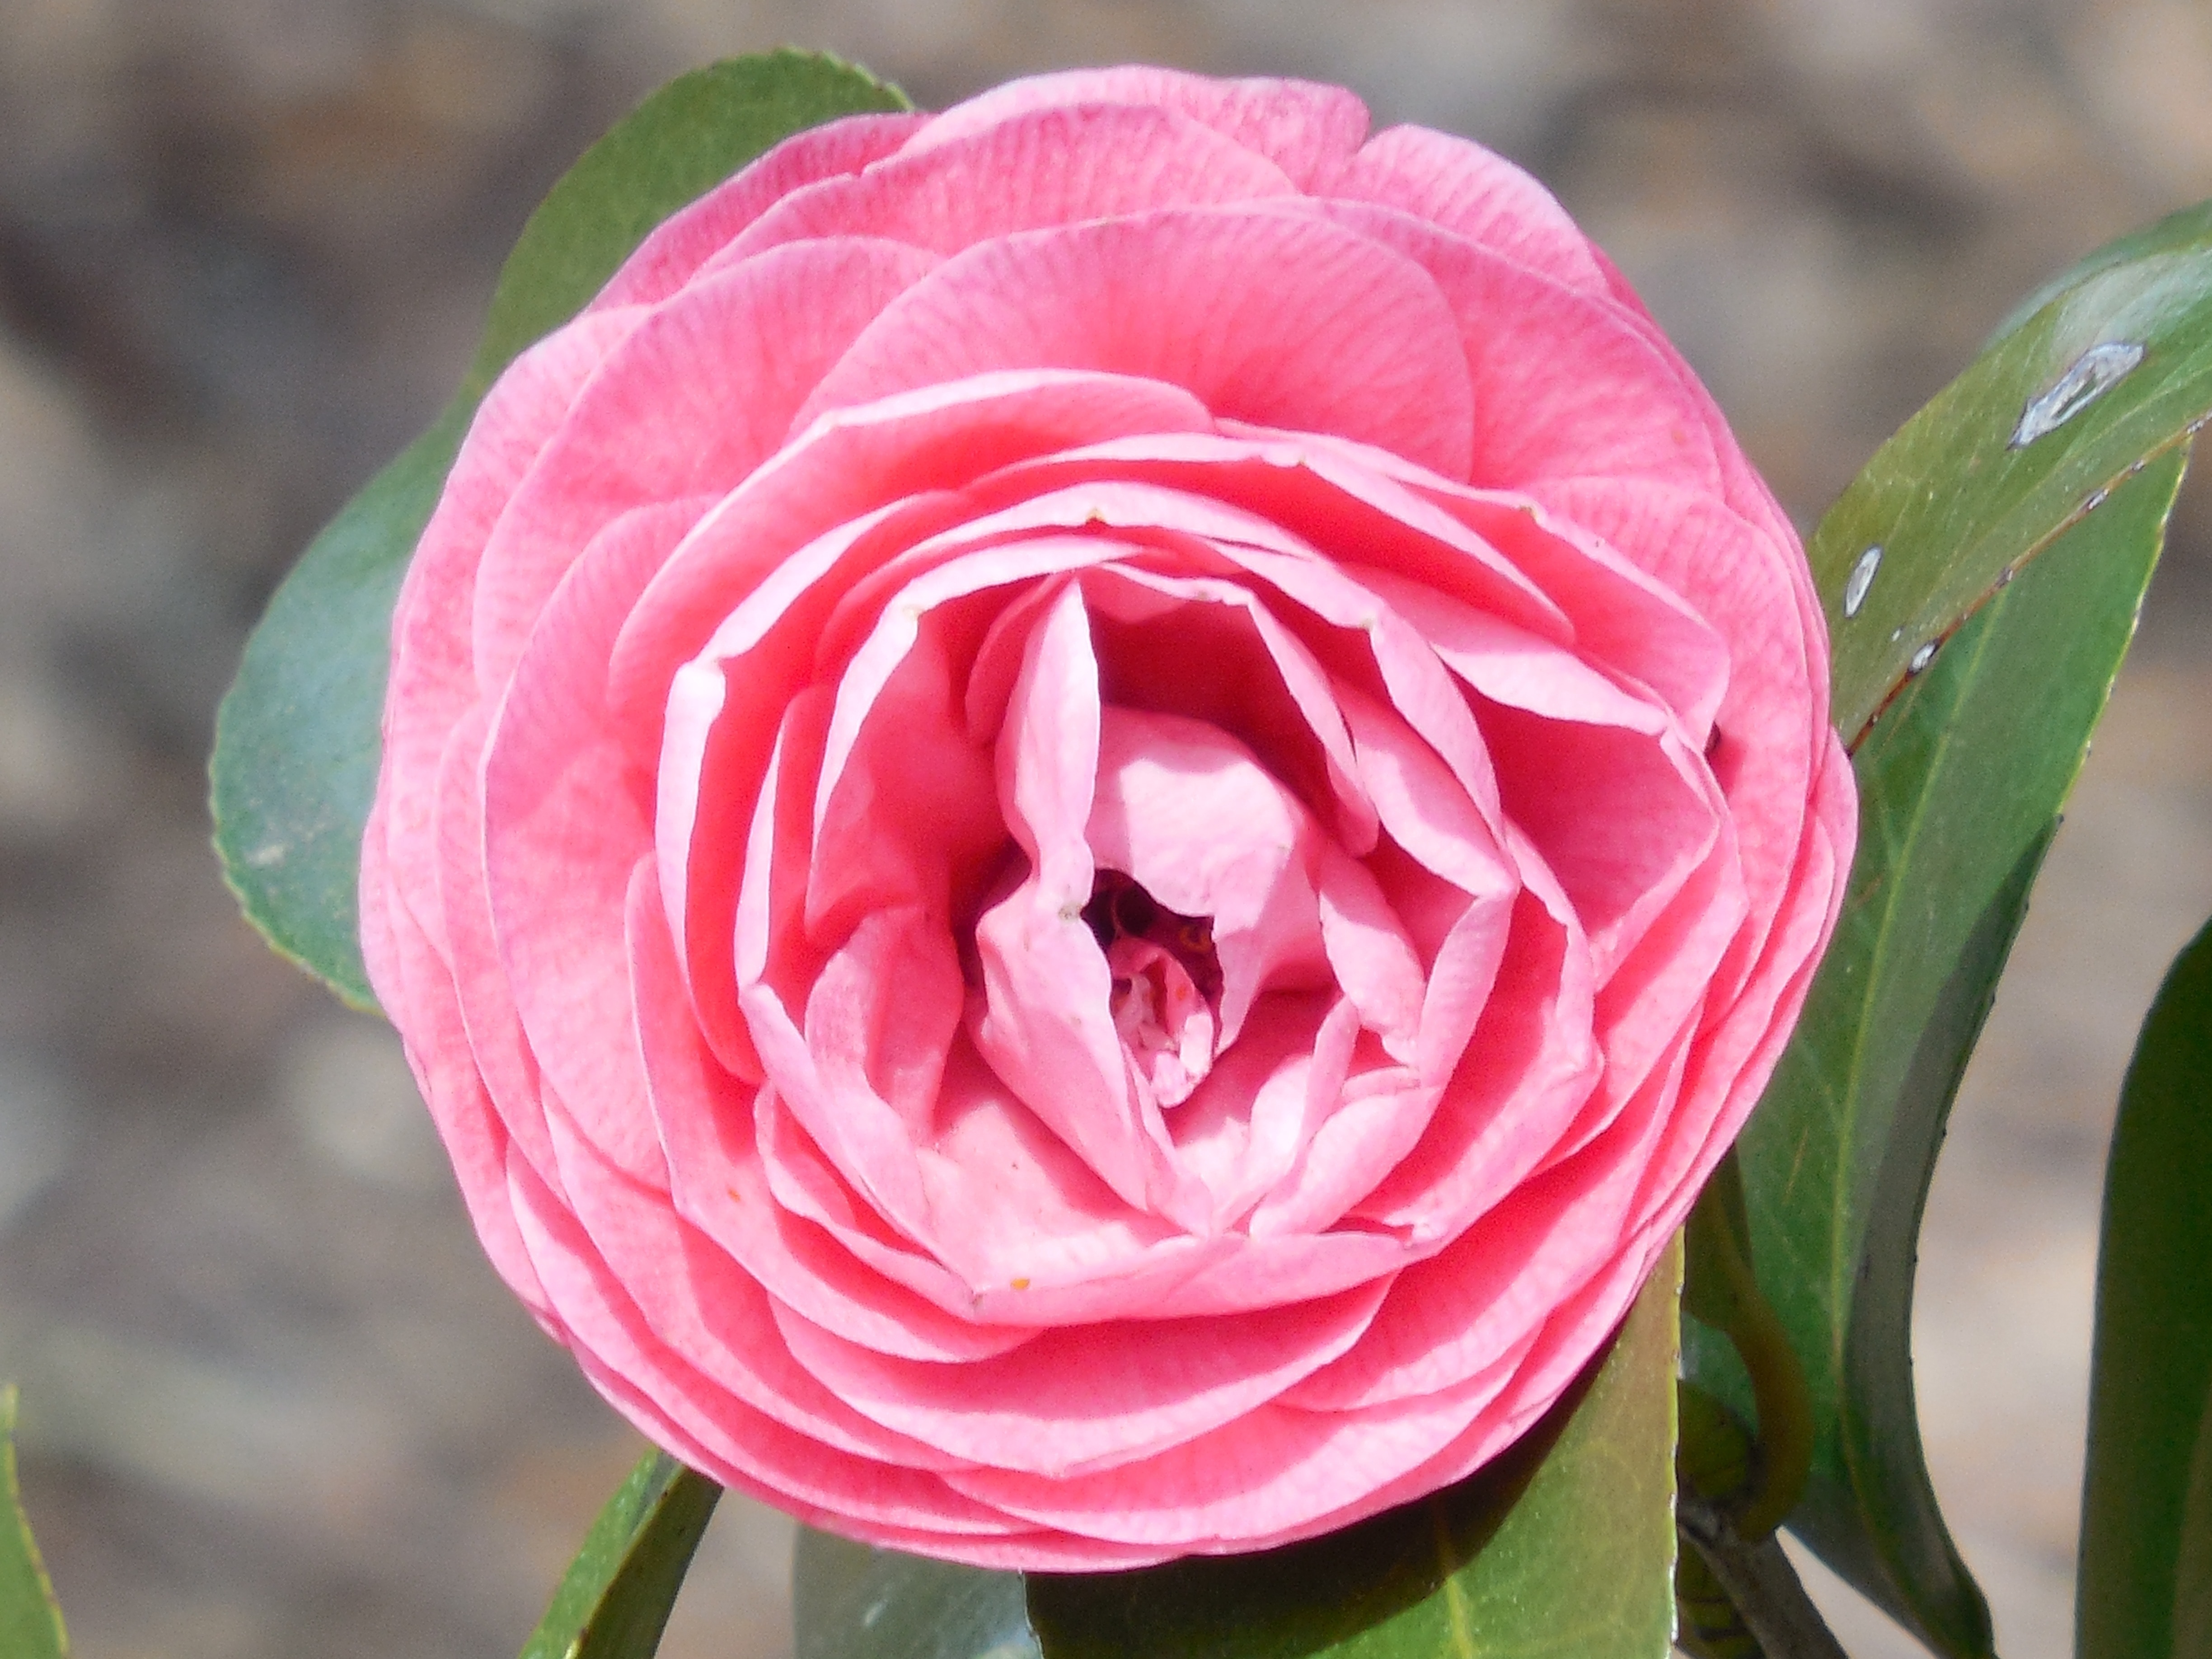 pink petaled rose flower